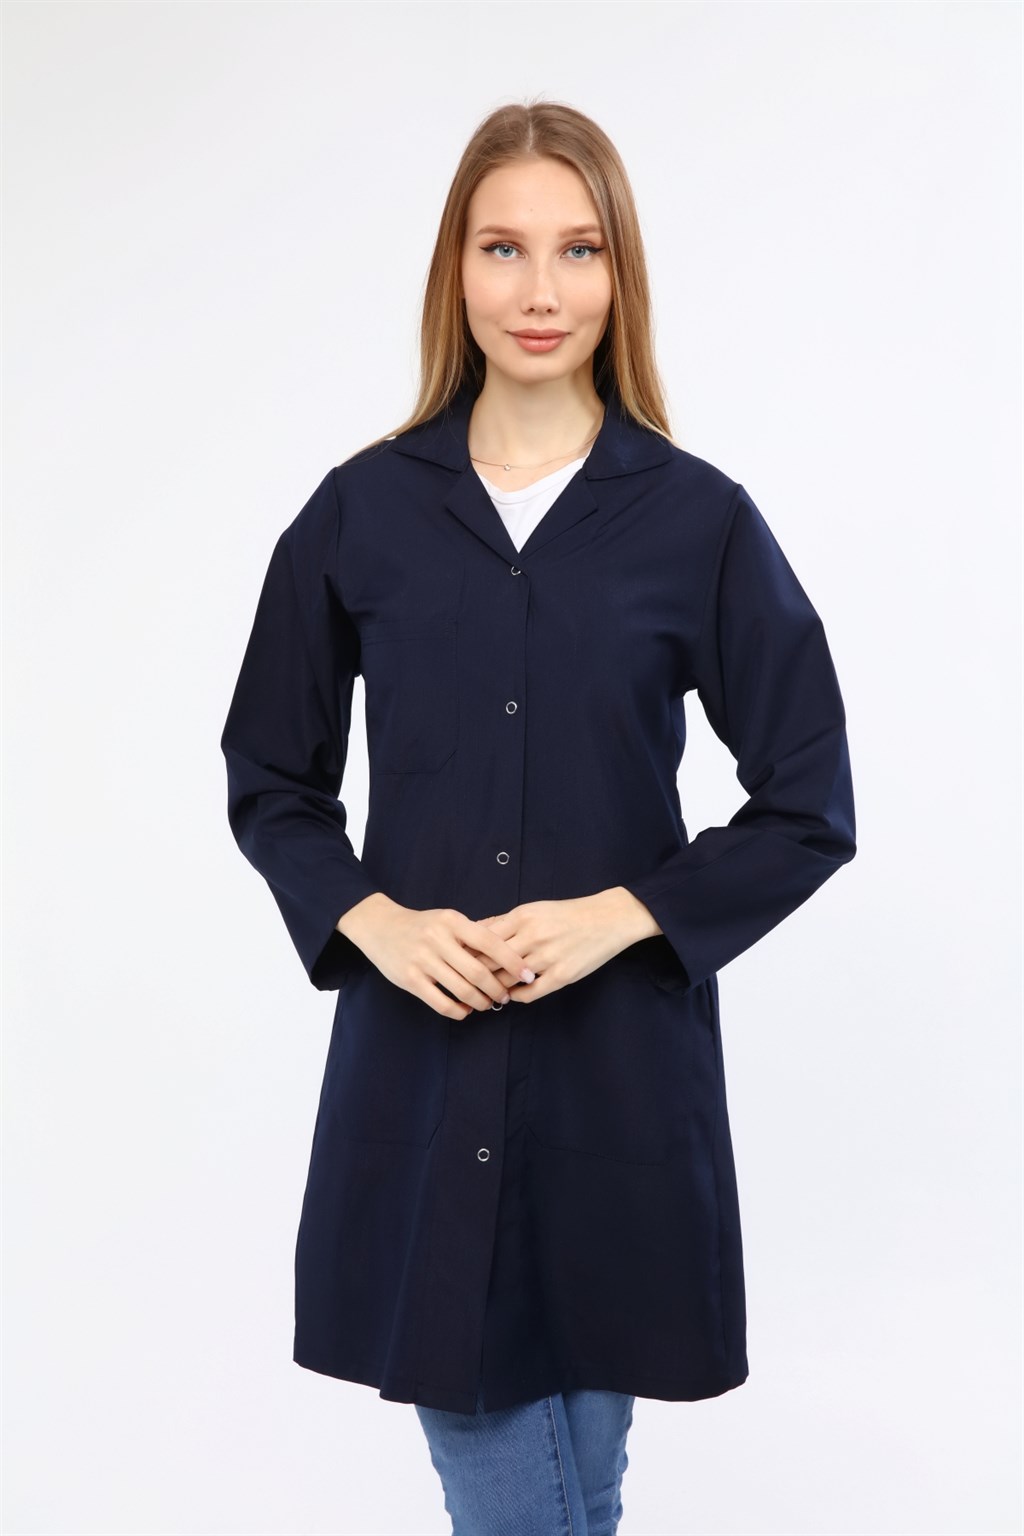 Çamdalı İş Elbiseleri - Lacivert Alpaka Kadın Önlük - Lacivert Kadın İş  ÖnlüğüÇDALPKKDNLACİ-XSiş güvenlik elbiseleriÇamdalı İş Elbiseleri111,93  TLÇamdalı İş Elbiseleri İmalat Sanayi